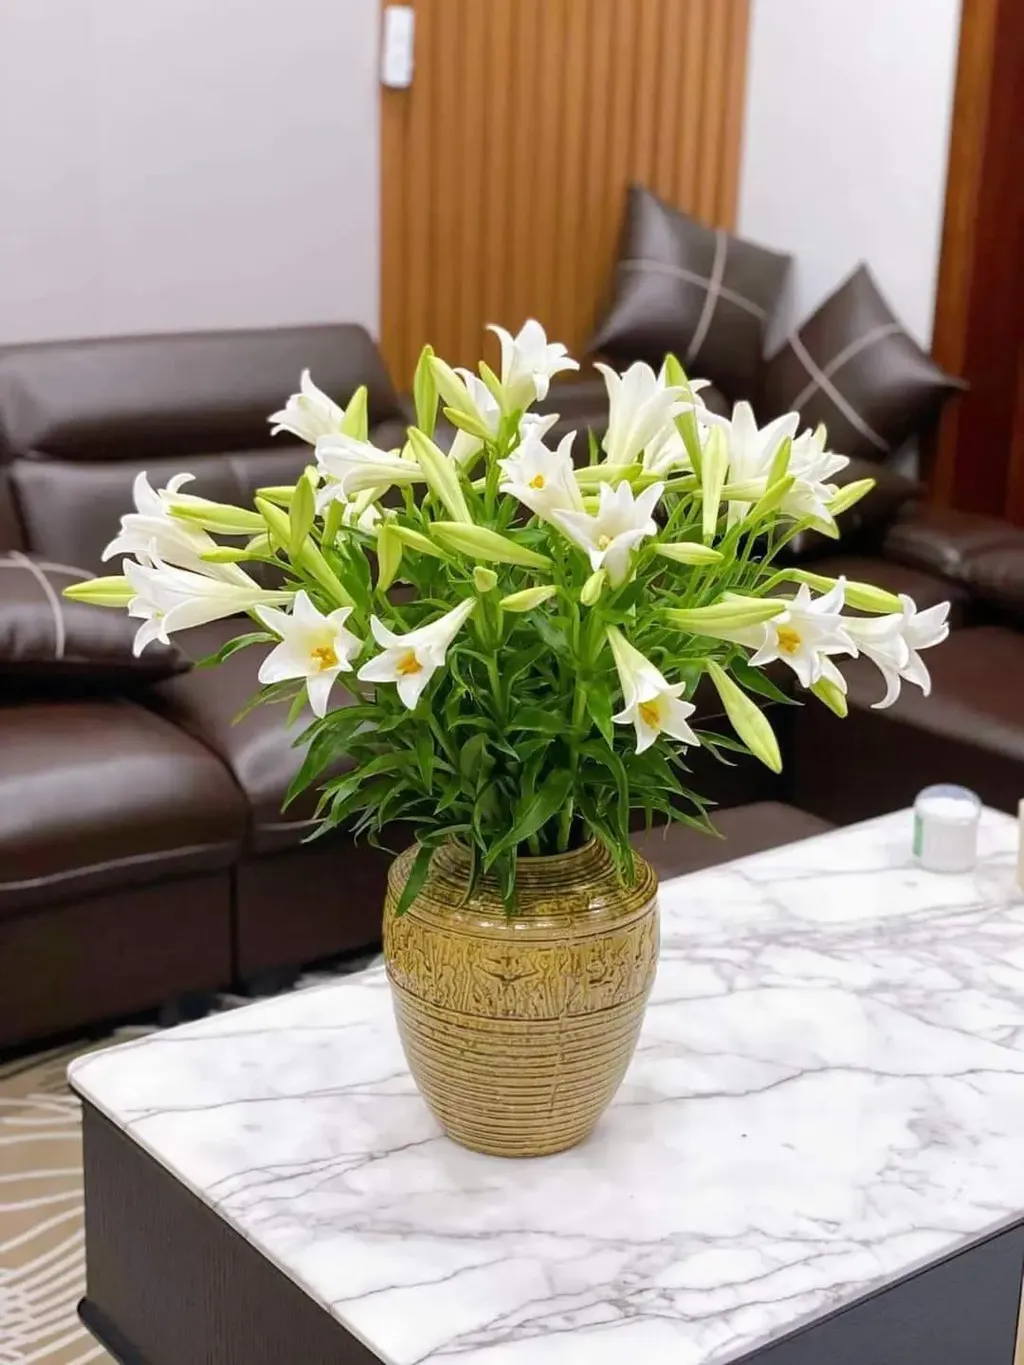 Hoa loa kèn trắng dễ chơi, dễ chăm nên được rất nhiều người yêu thích.